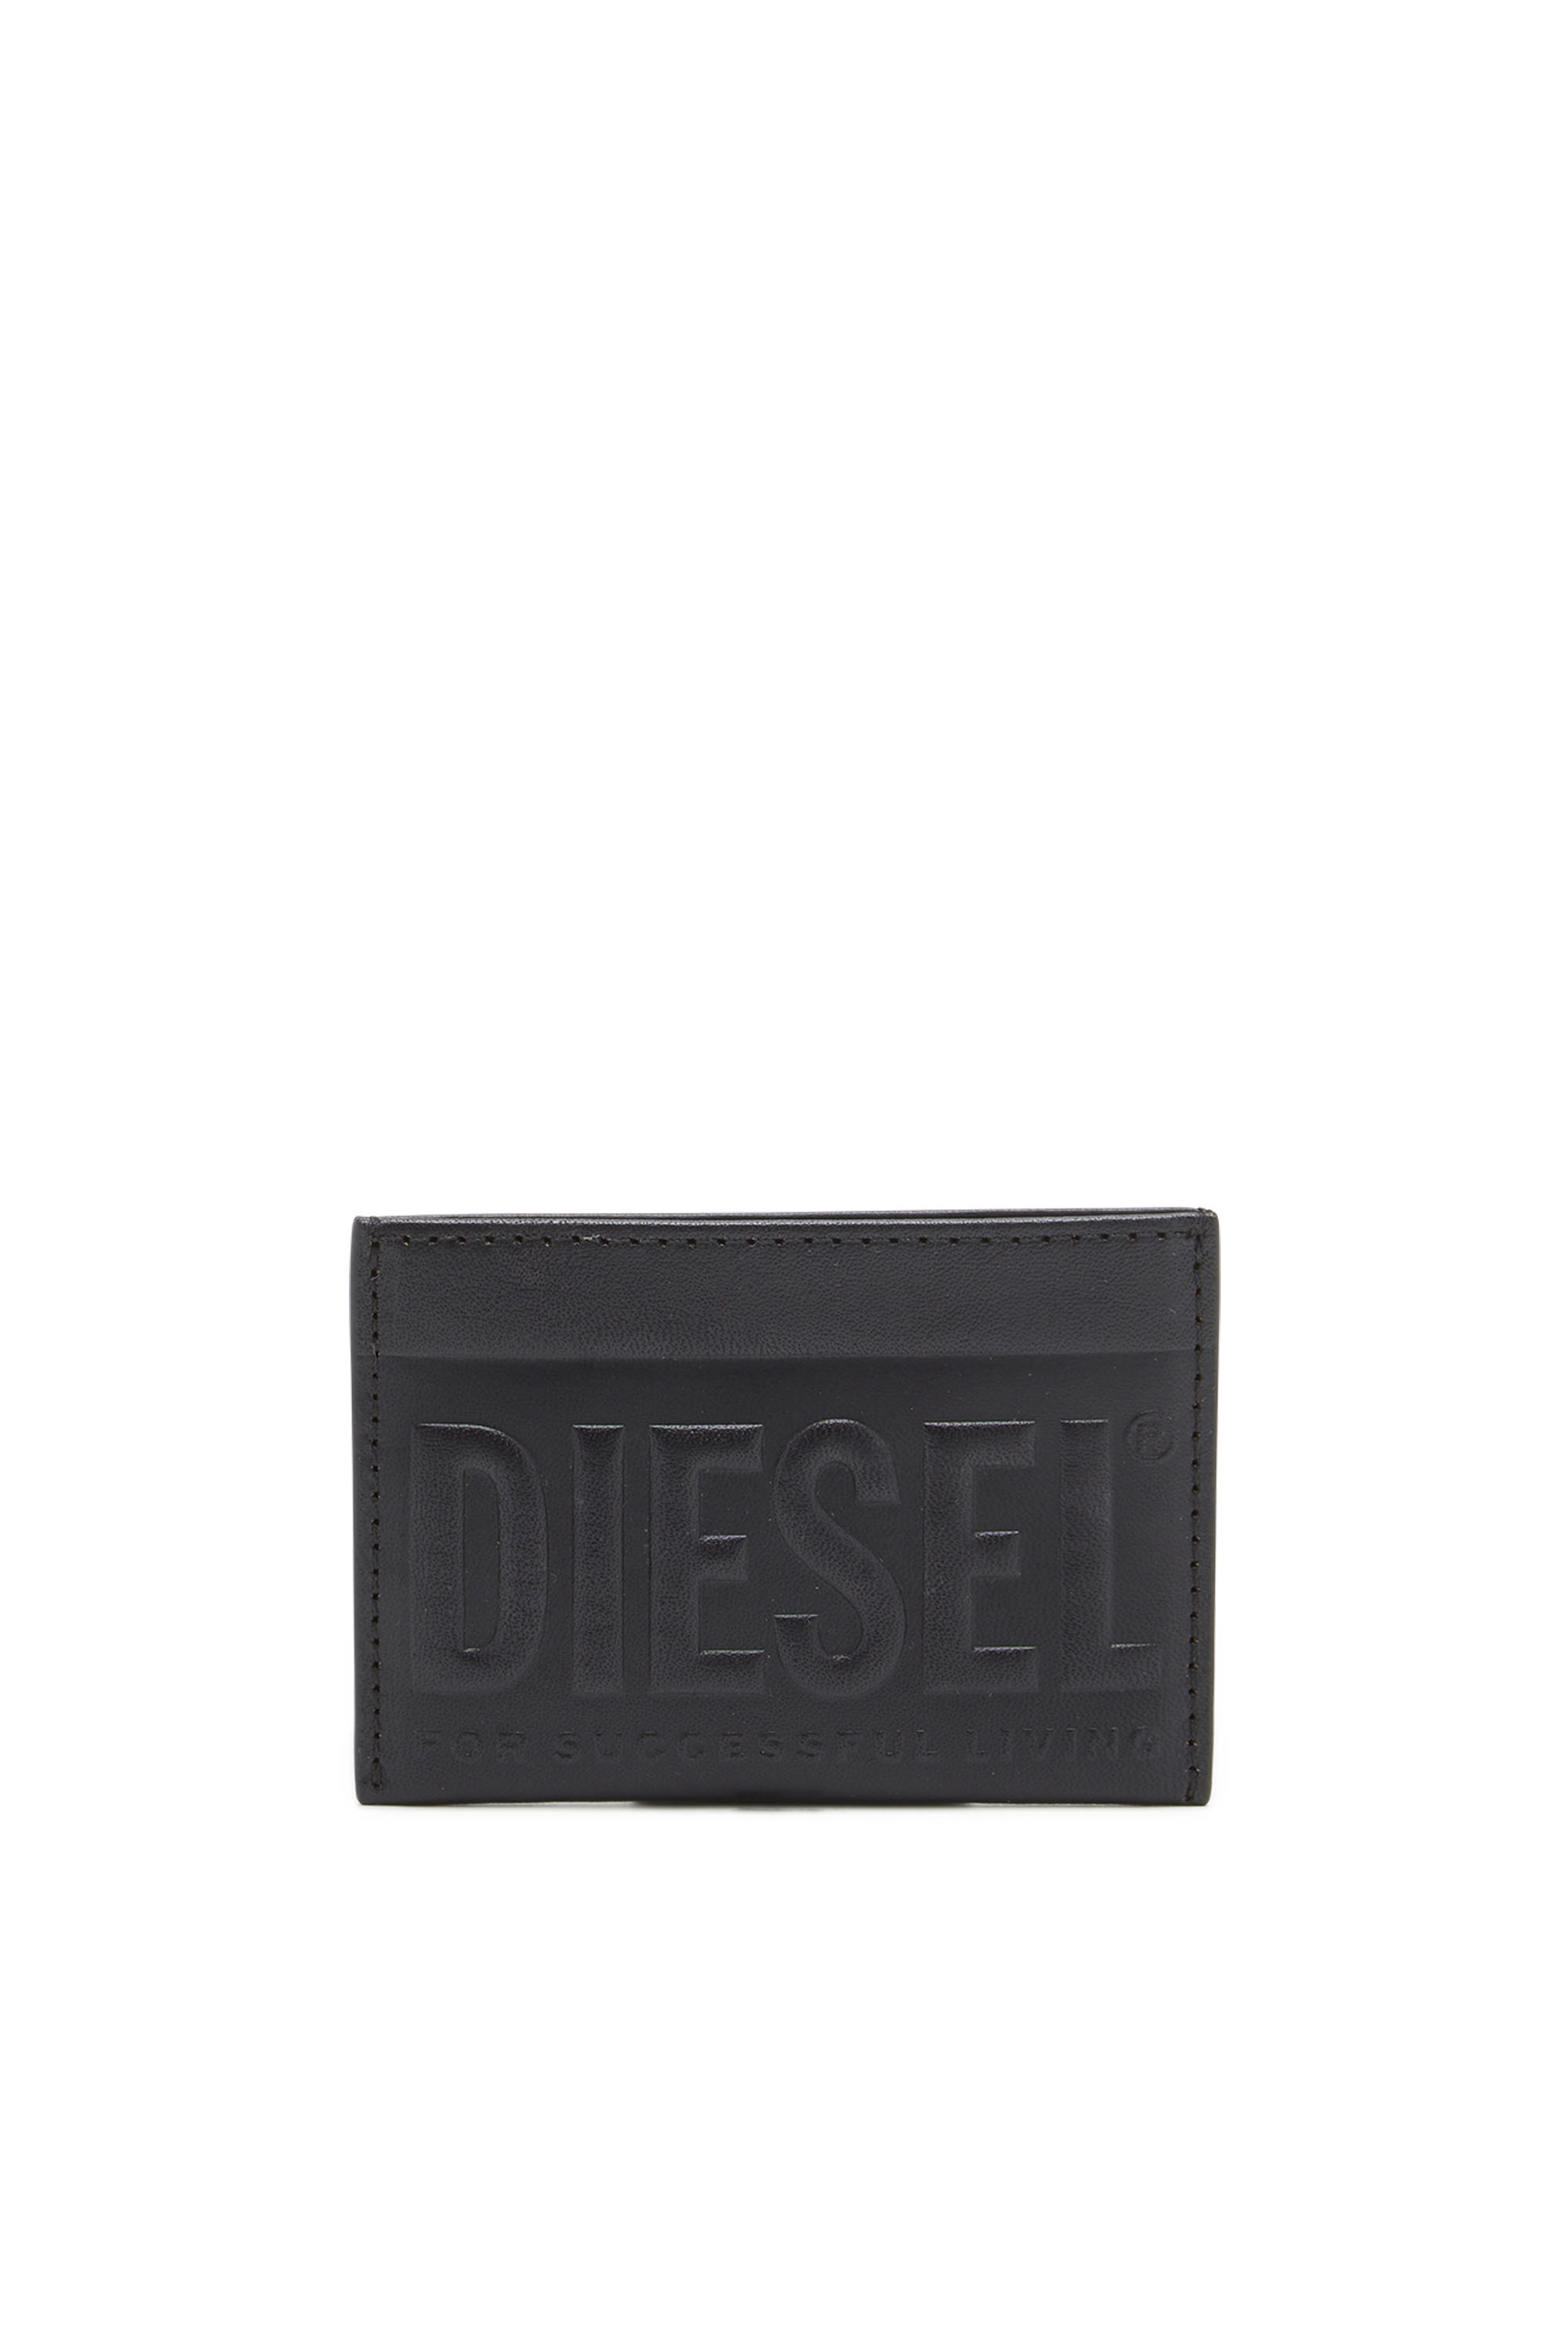 Diesel - DSL 3D EASY CARD HOLDER, Negro - Image 1